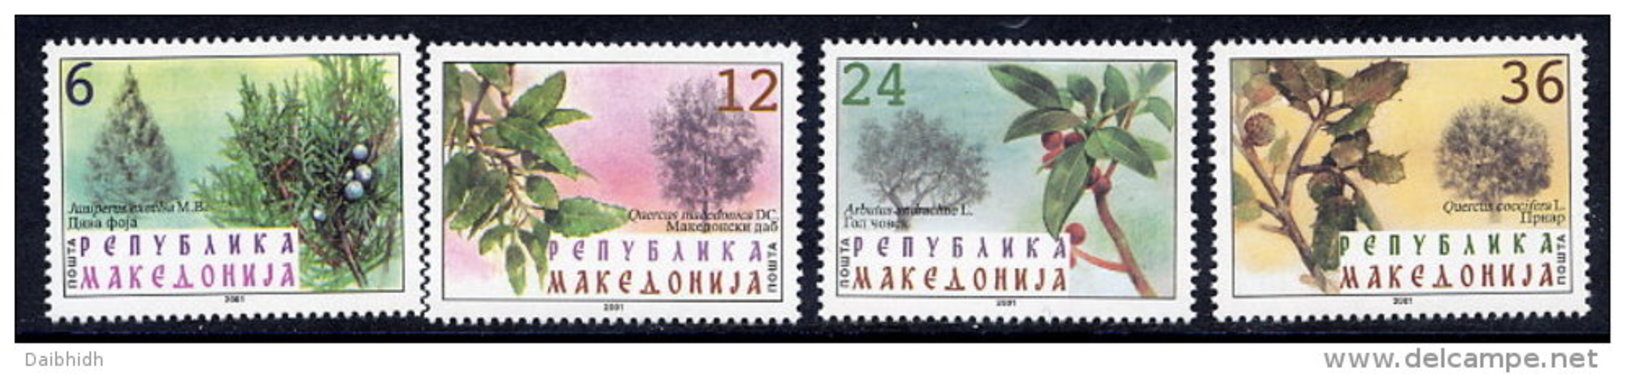 MACEDONIA  2001 Native Trees MNH / **.  Michel 234-37 - North Macedonia